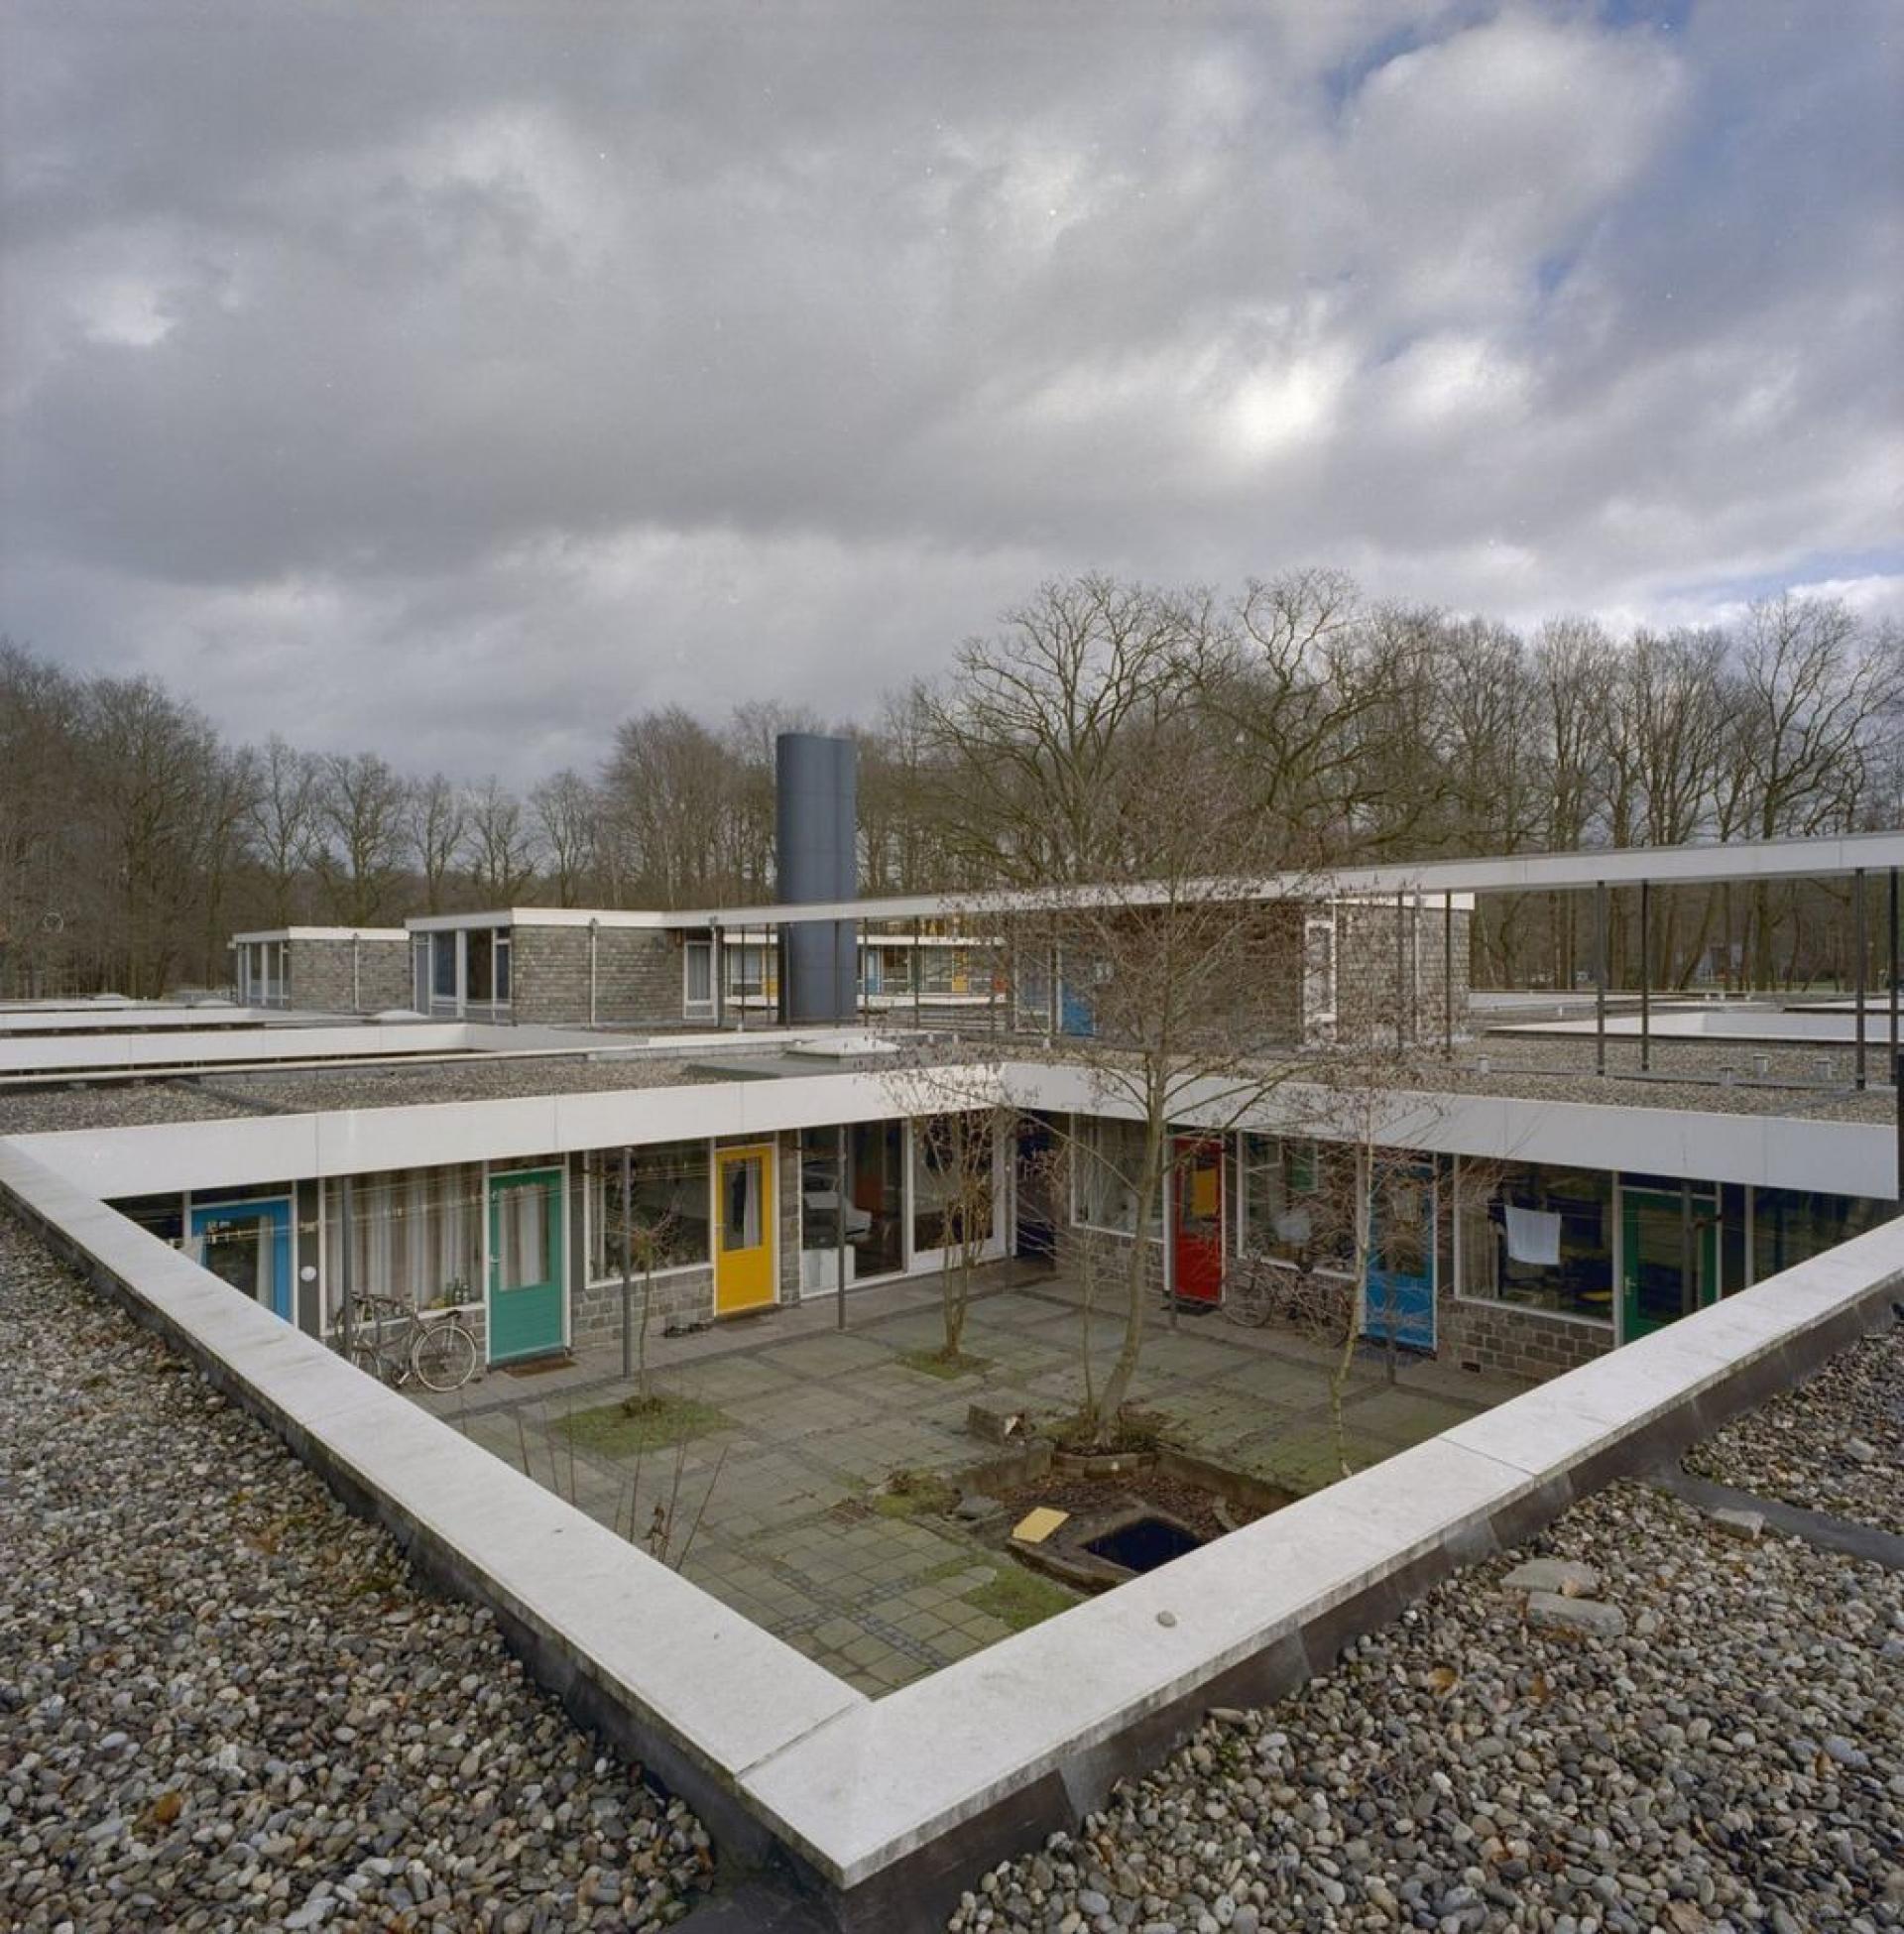 Patio Student Housing, Drienerlo Enschede, 1964-65. | Source Rijksdient voor het Cultureel Erfgoed